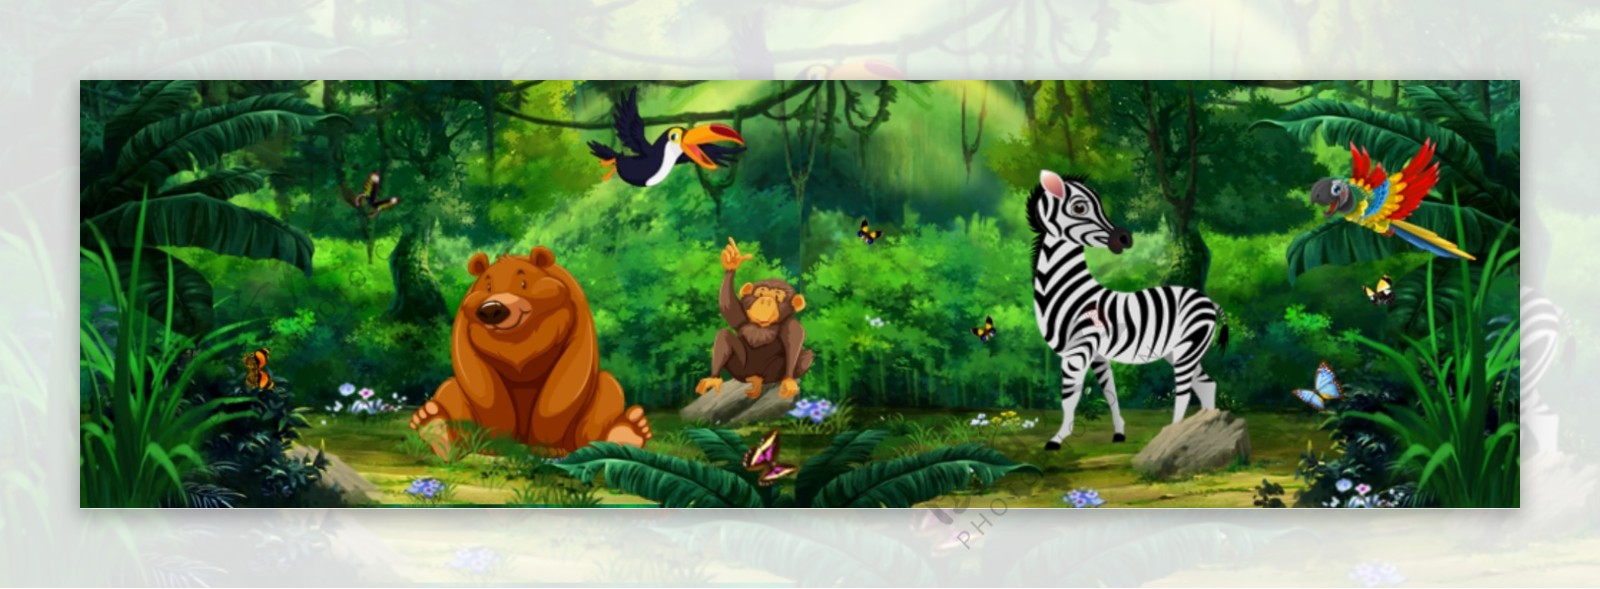 卡通动物派对森林背景